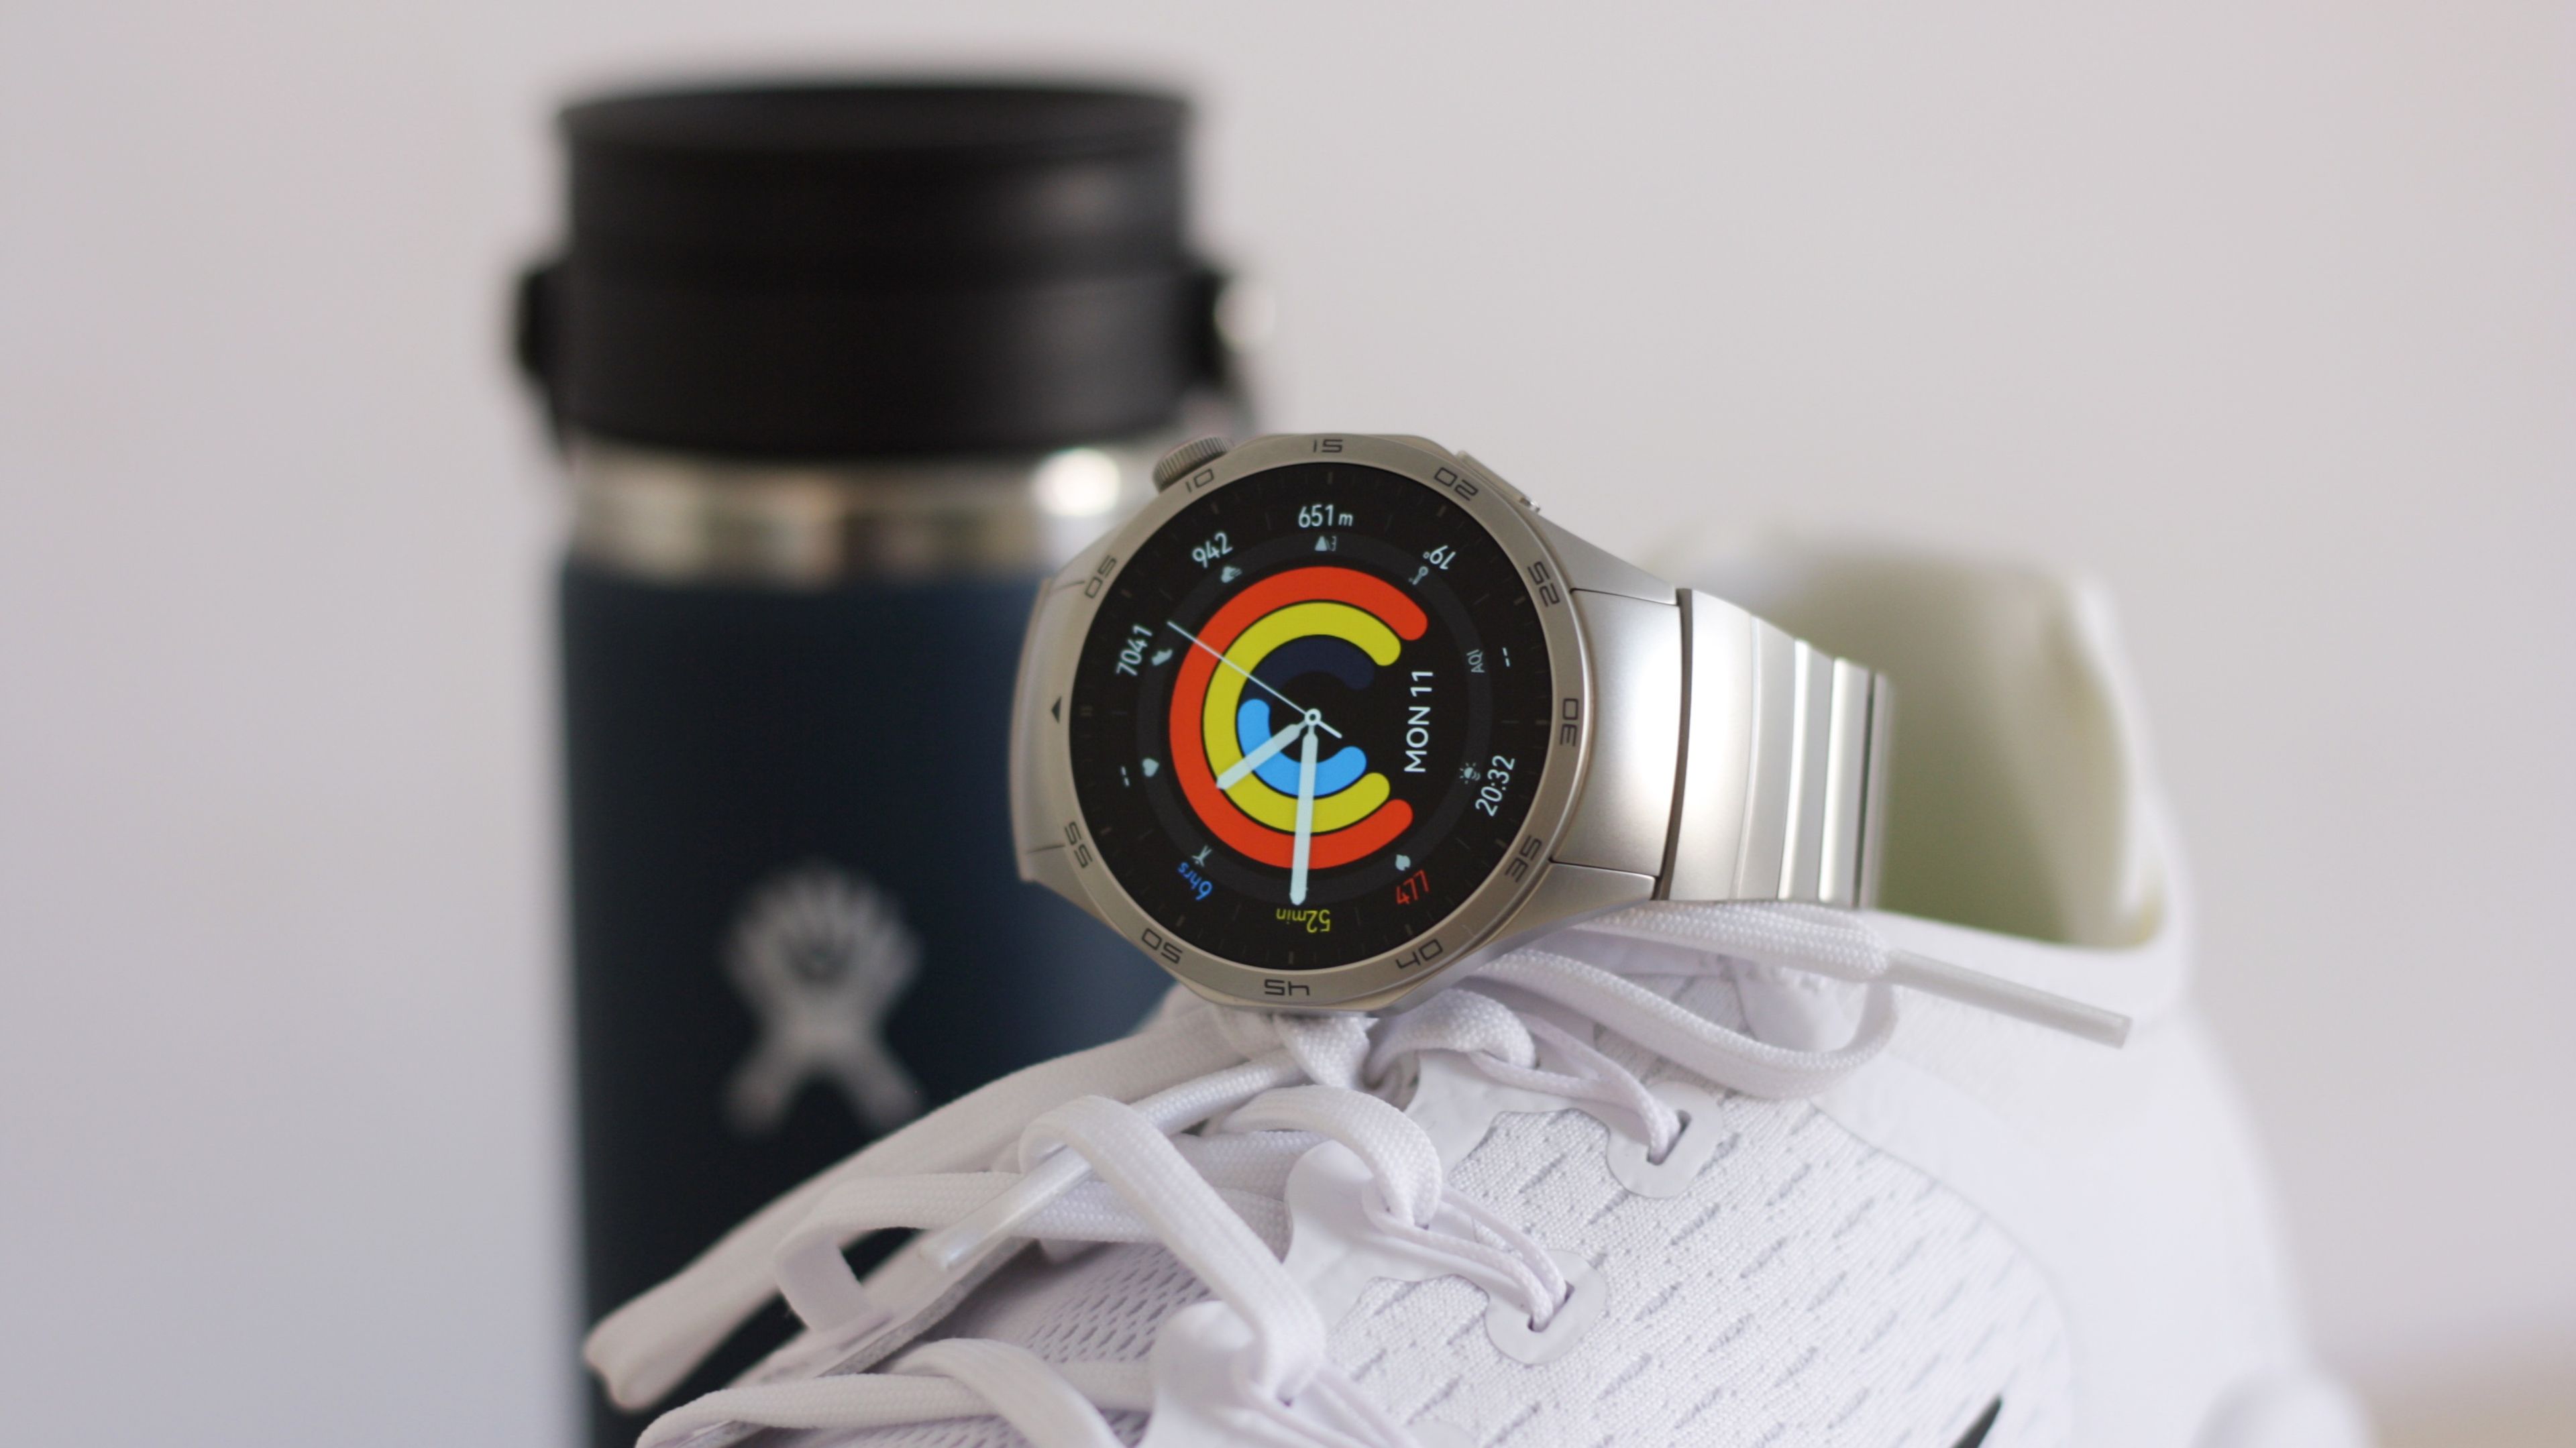 Nuevo Huawei Watch GT 2 Pro: características, precio y ficha técnica.